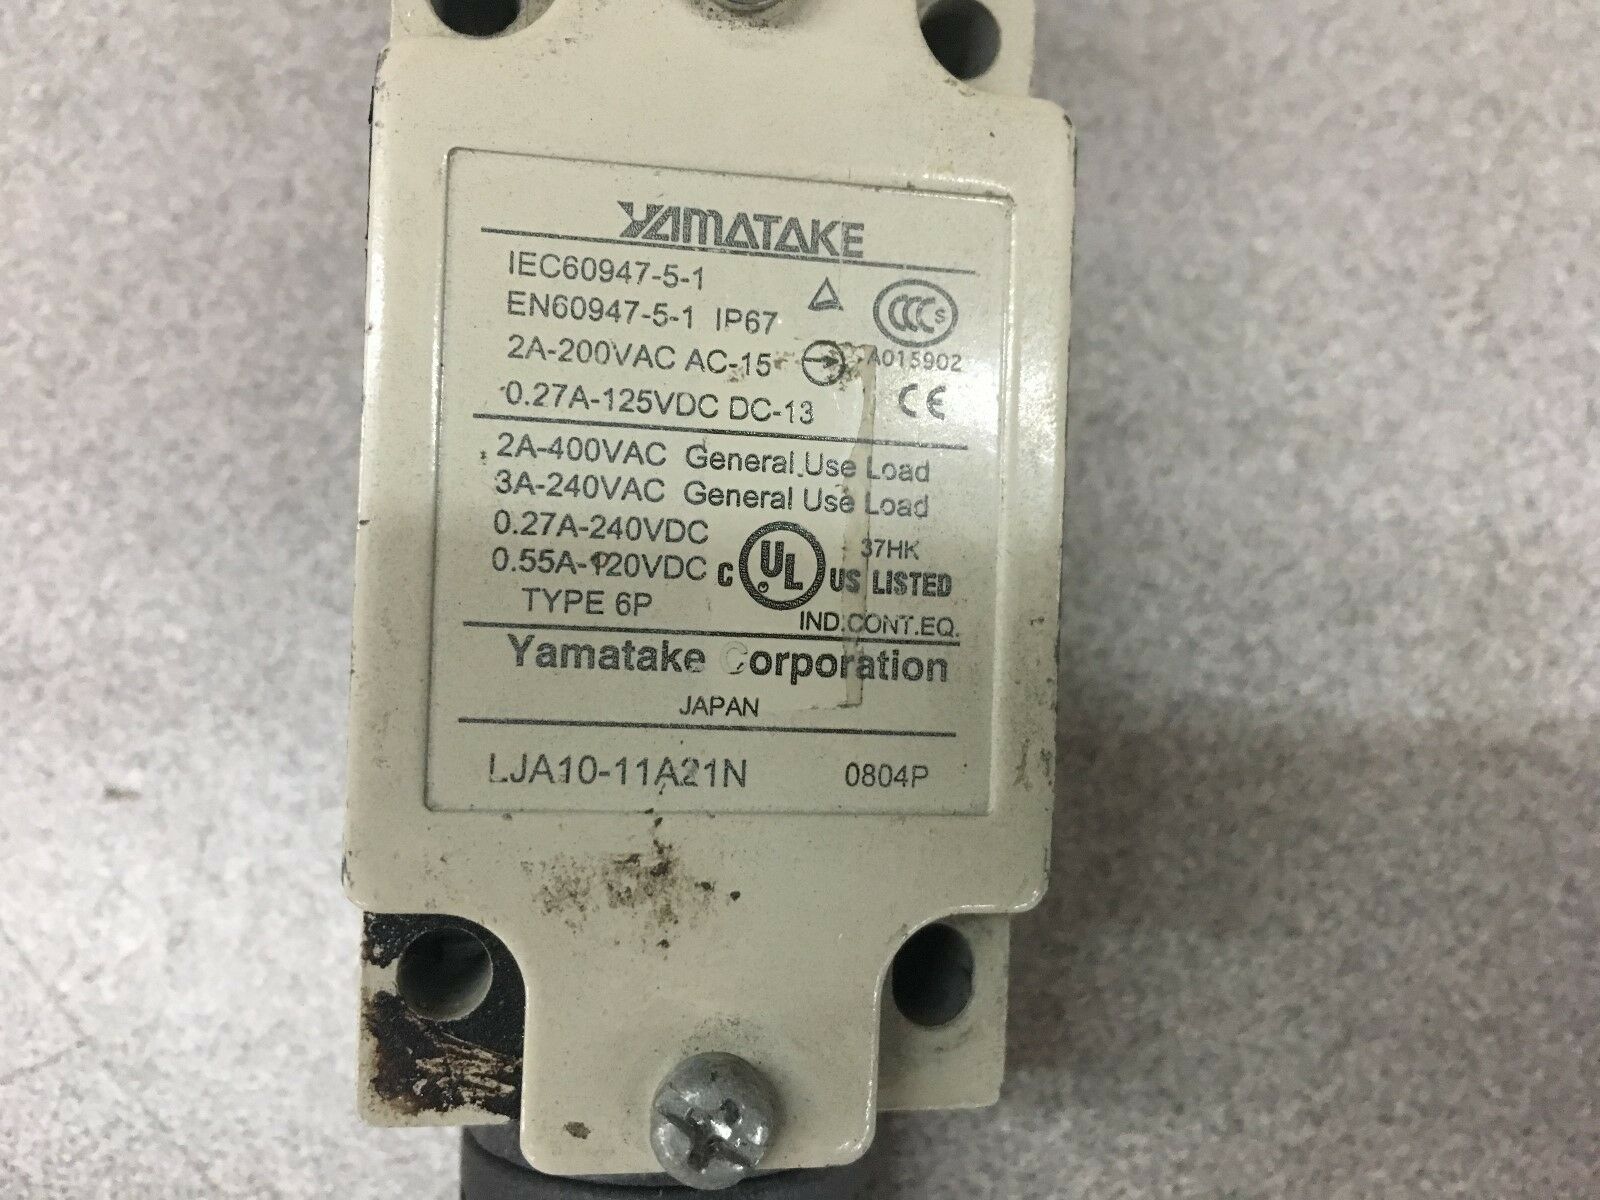 USED YAMATAKE IEC60947-5-1 LIMIT SWITCH LJA10-11A21N